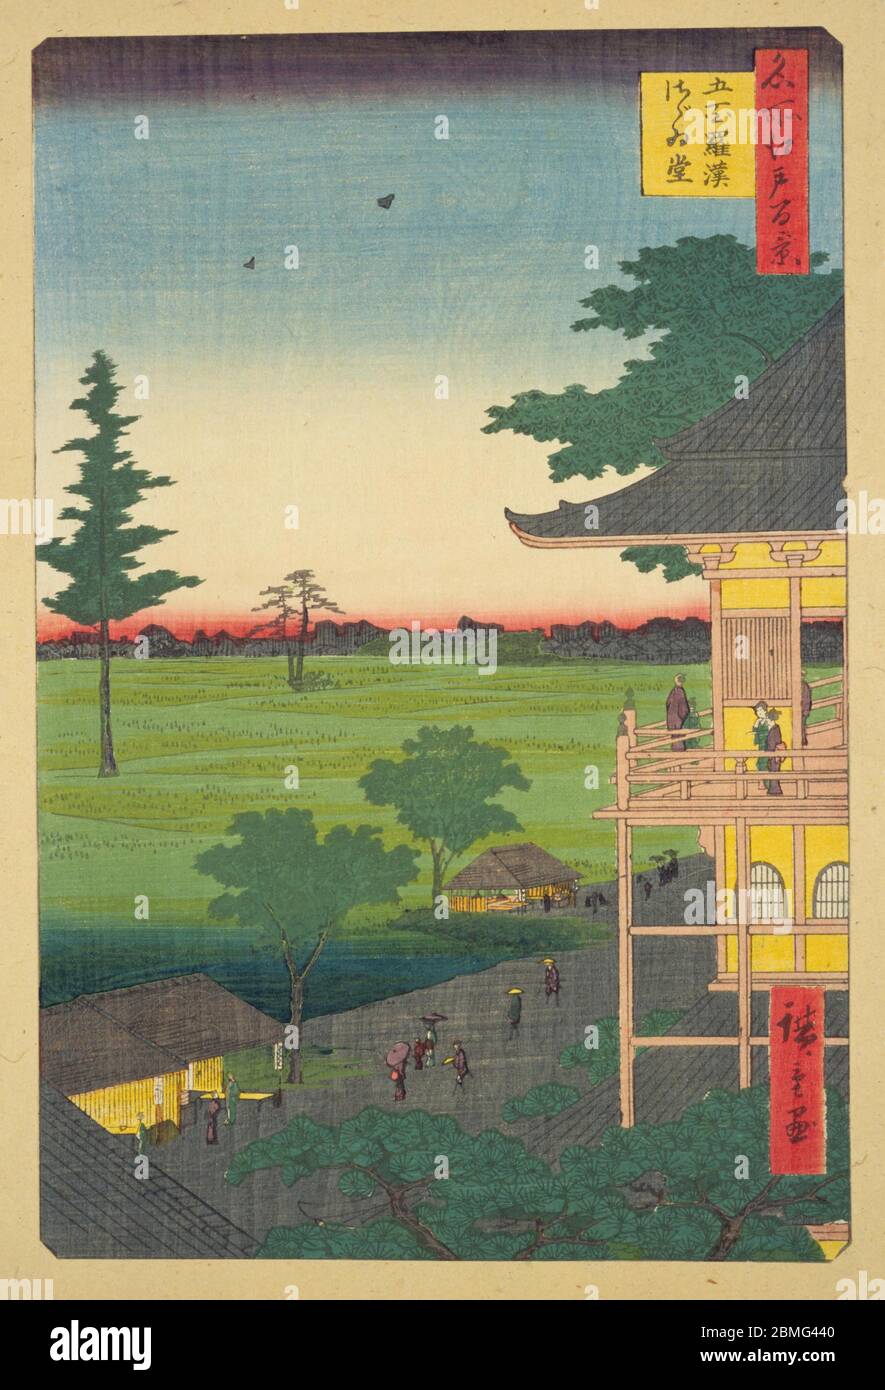 [ 1850er Japan - Gohyaku Rakanji Tempel ] - Gohyaku Rakanji Tempel in Edo (aktuelle Tokyo), 1857 (Ansei 4). Der Tempel wurde fünfhundert legendären Schülern Buddhas gewidmet. Dieser Holzschnitt ist Bild 66 in hundert berühmten Ansichten von Edo (名所江戸百景, Meisho Edo Hyakkei), einer Serie von Ukiyoe Künstler Utagawa Hiroshige (歌川広重, 1797–1858) erstellt. Es ist eine von 30 Sommerszenen der Serie. Titel: Die Sazaido-Halle am Gohyaku Rakanji-Tempel (五百羅漢さゞゐ堂, Gohyaku Rakan Sazaido) Vintage-Holzschnitt aus dem 19. Jahrhundert. Stockfoto